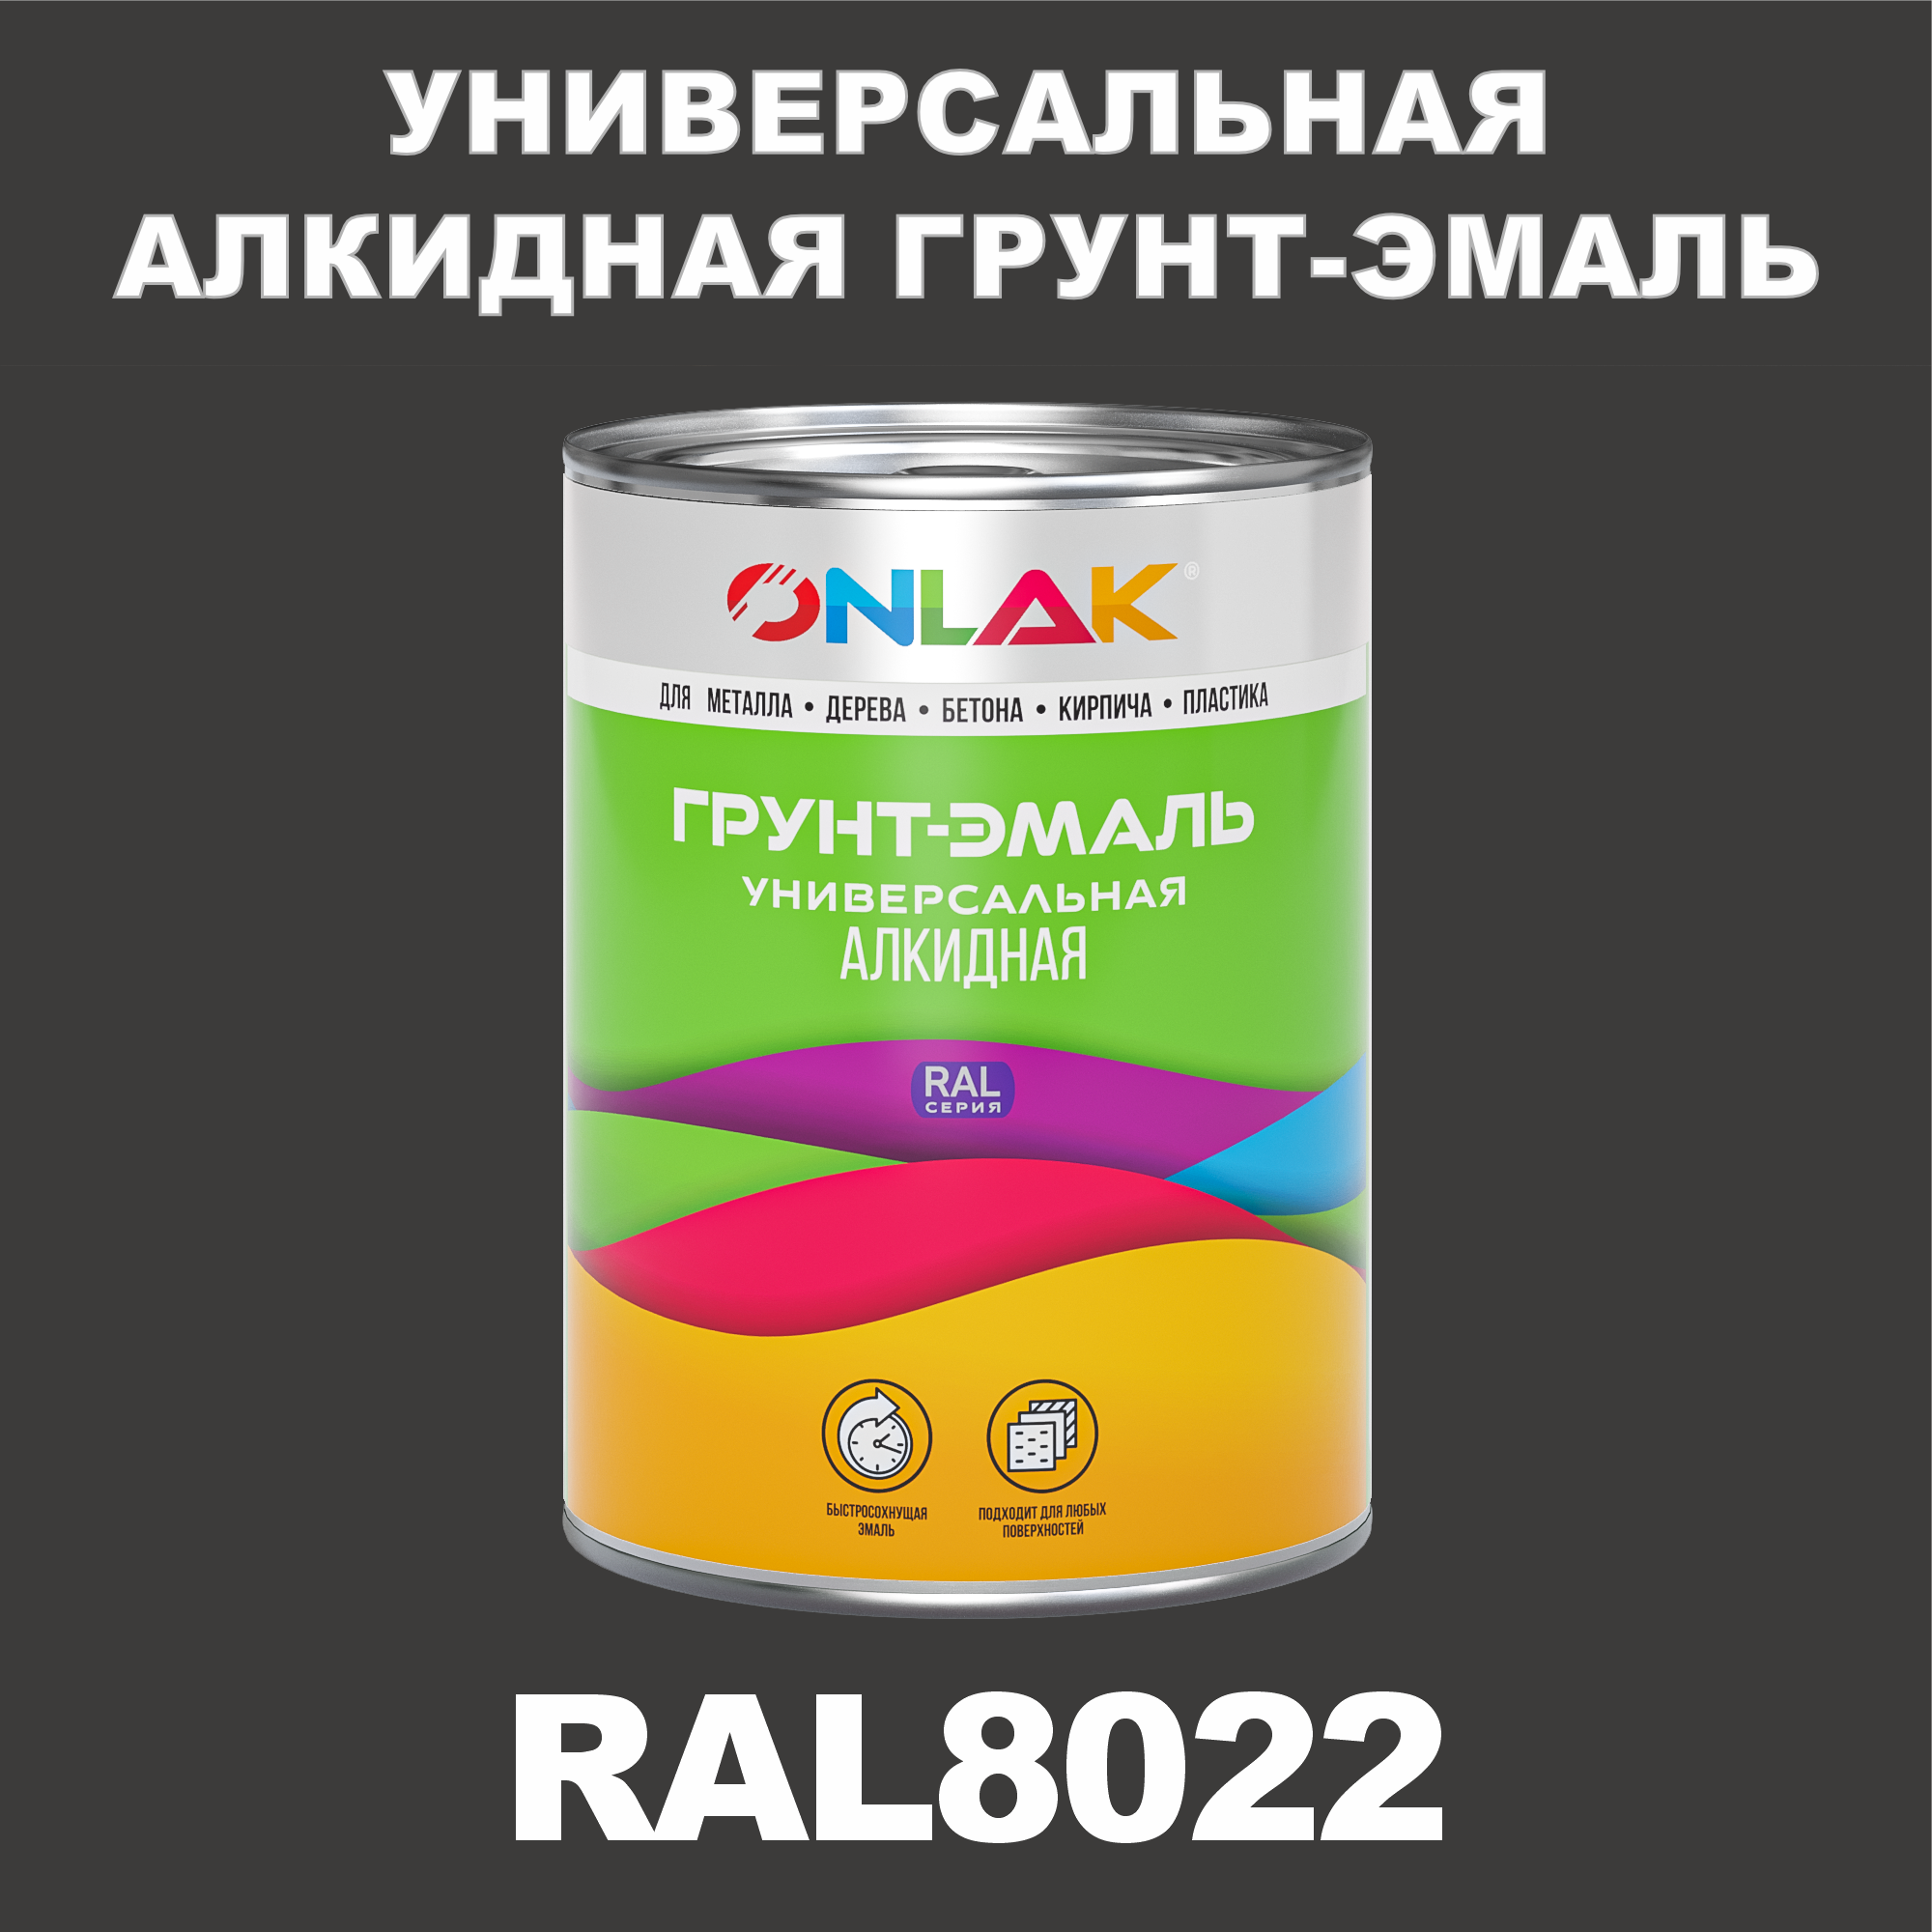 Грунт-эмаль ONLAK 1К RAL8022 антикоррозионная алкидная по металлу по ржавчине 1 кг